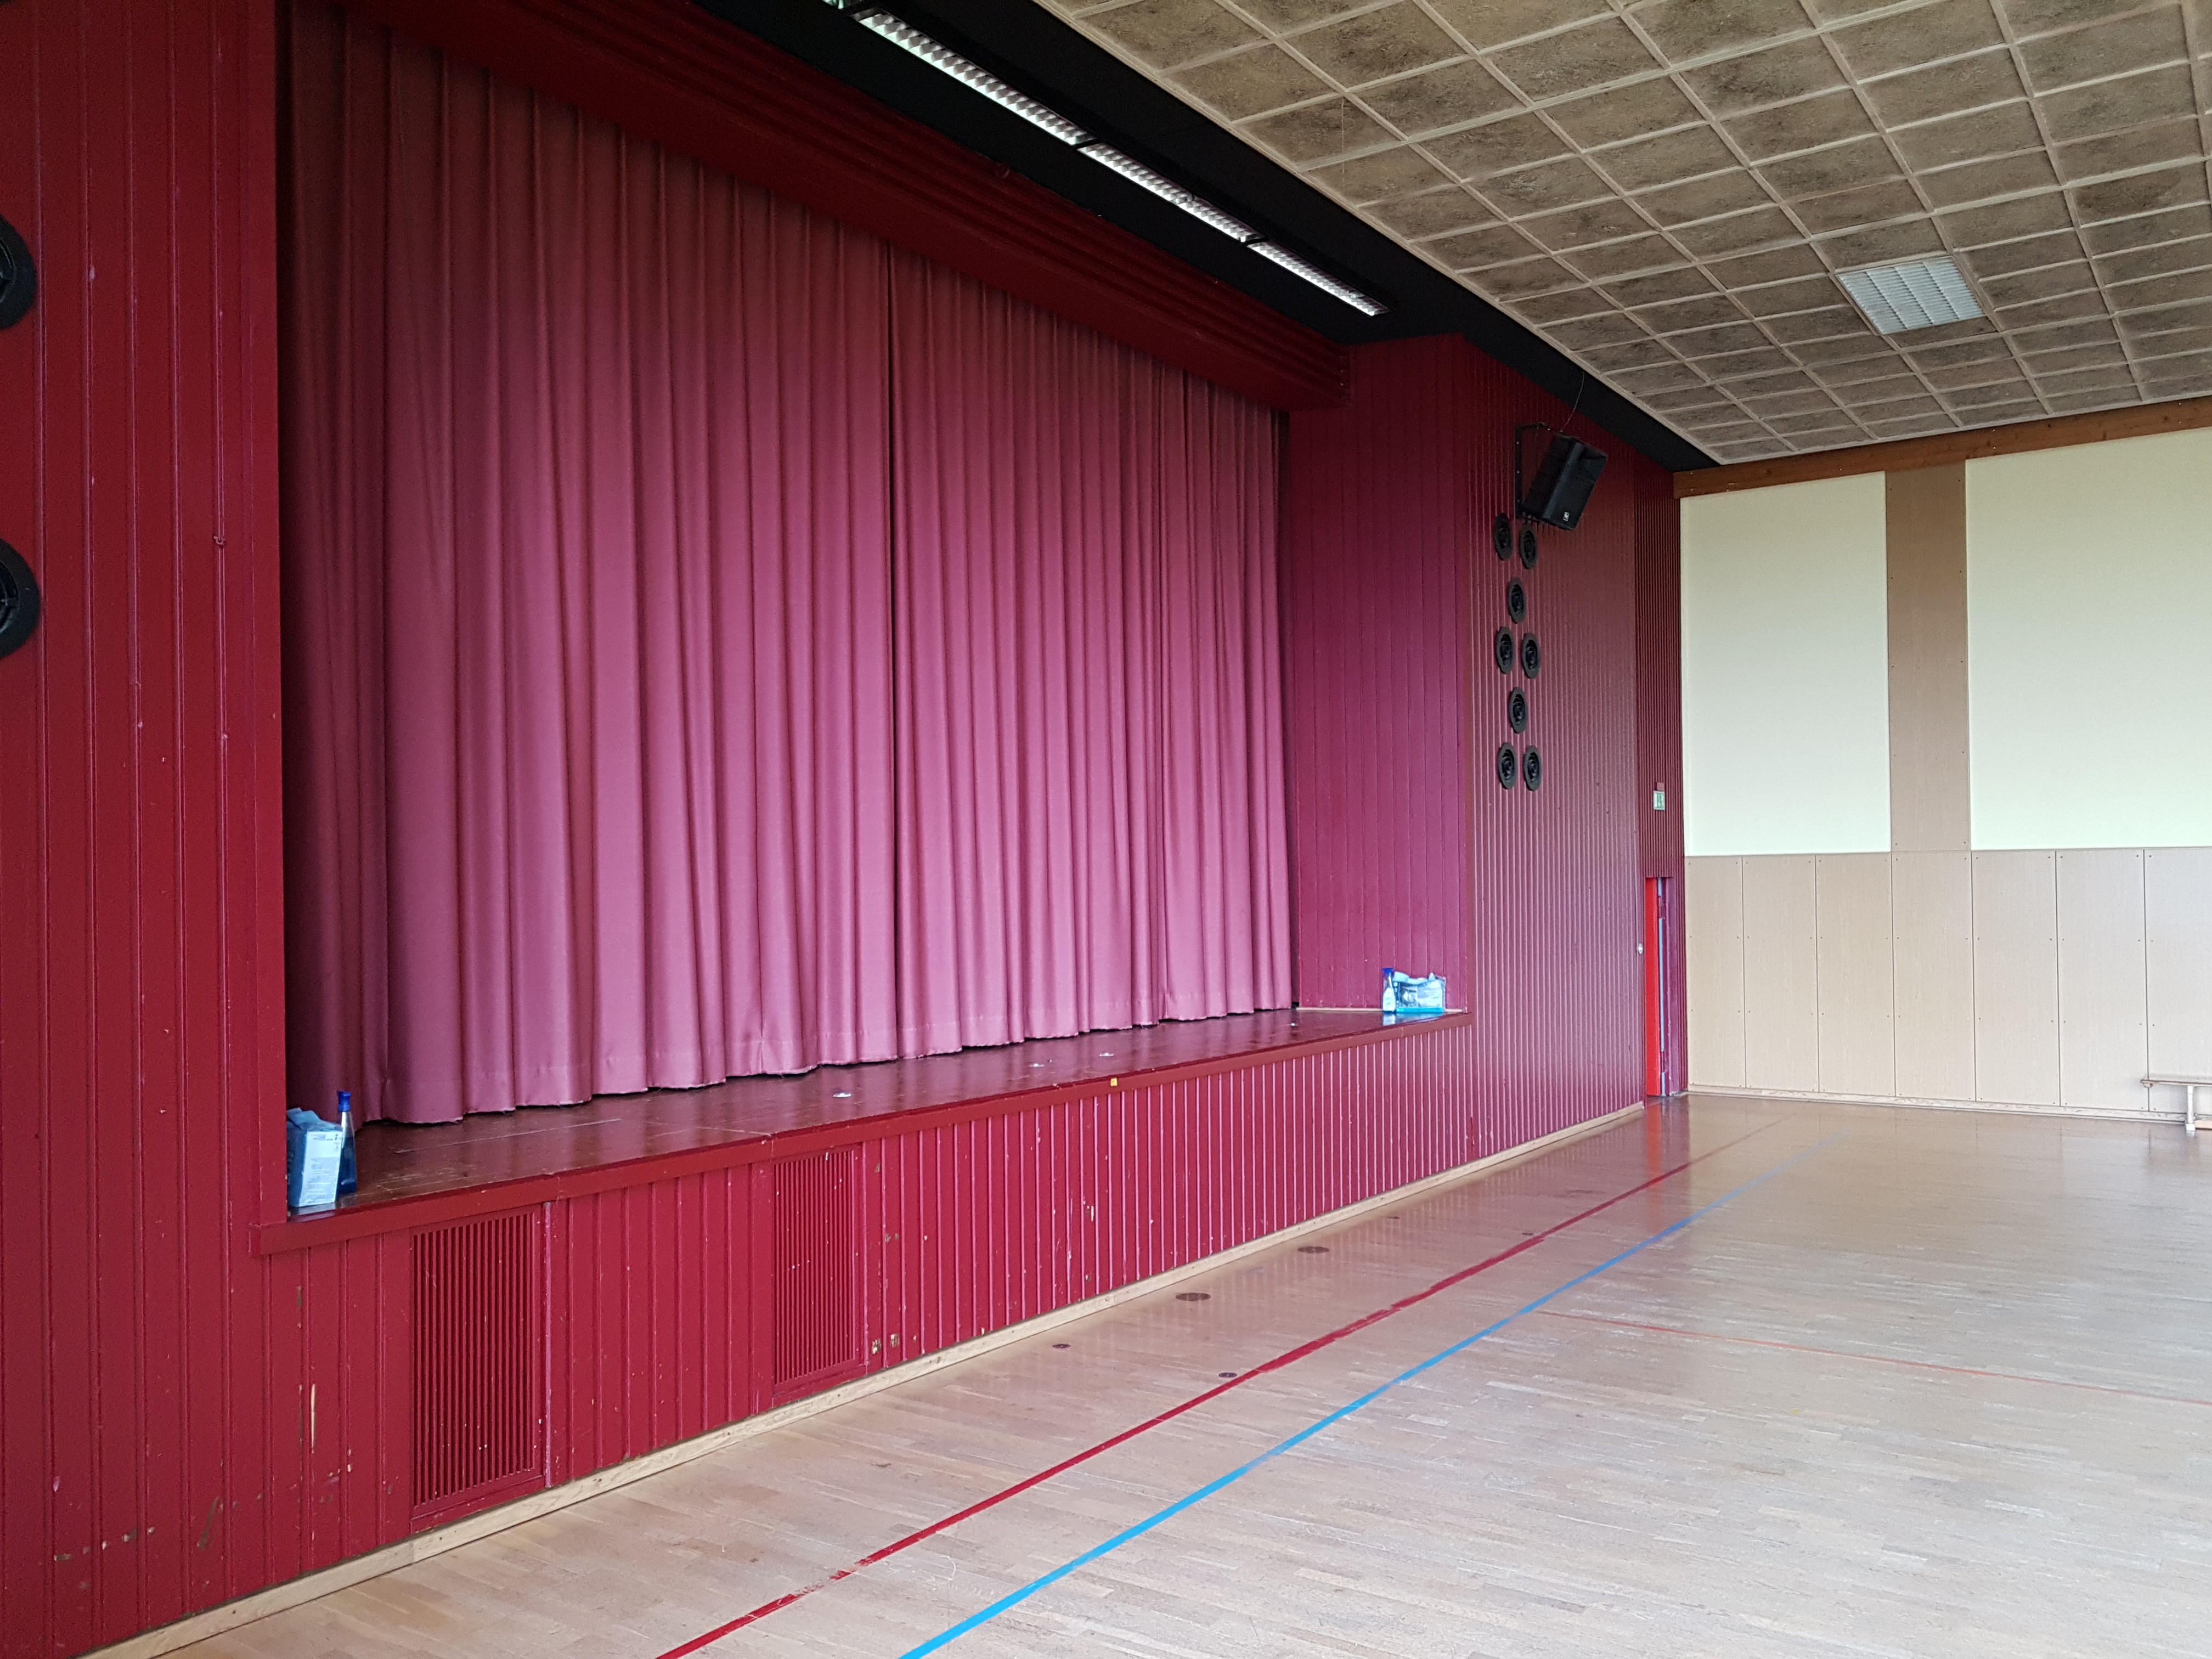 Das Bild zeigt eine Bühne mit geschlossenem Theatervorhang.